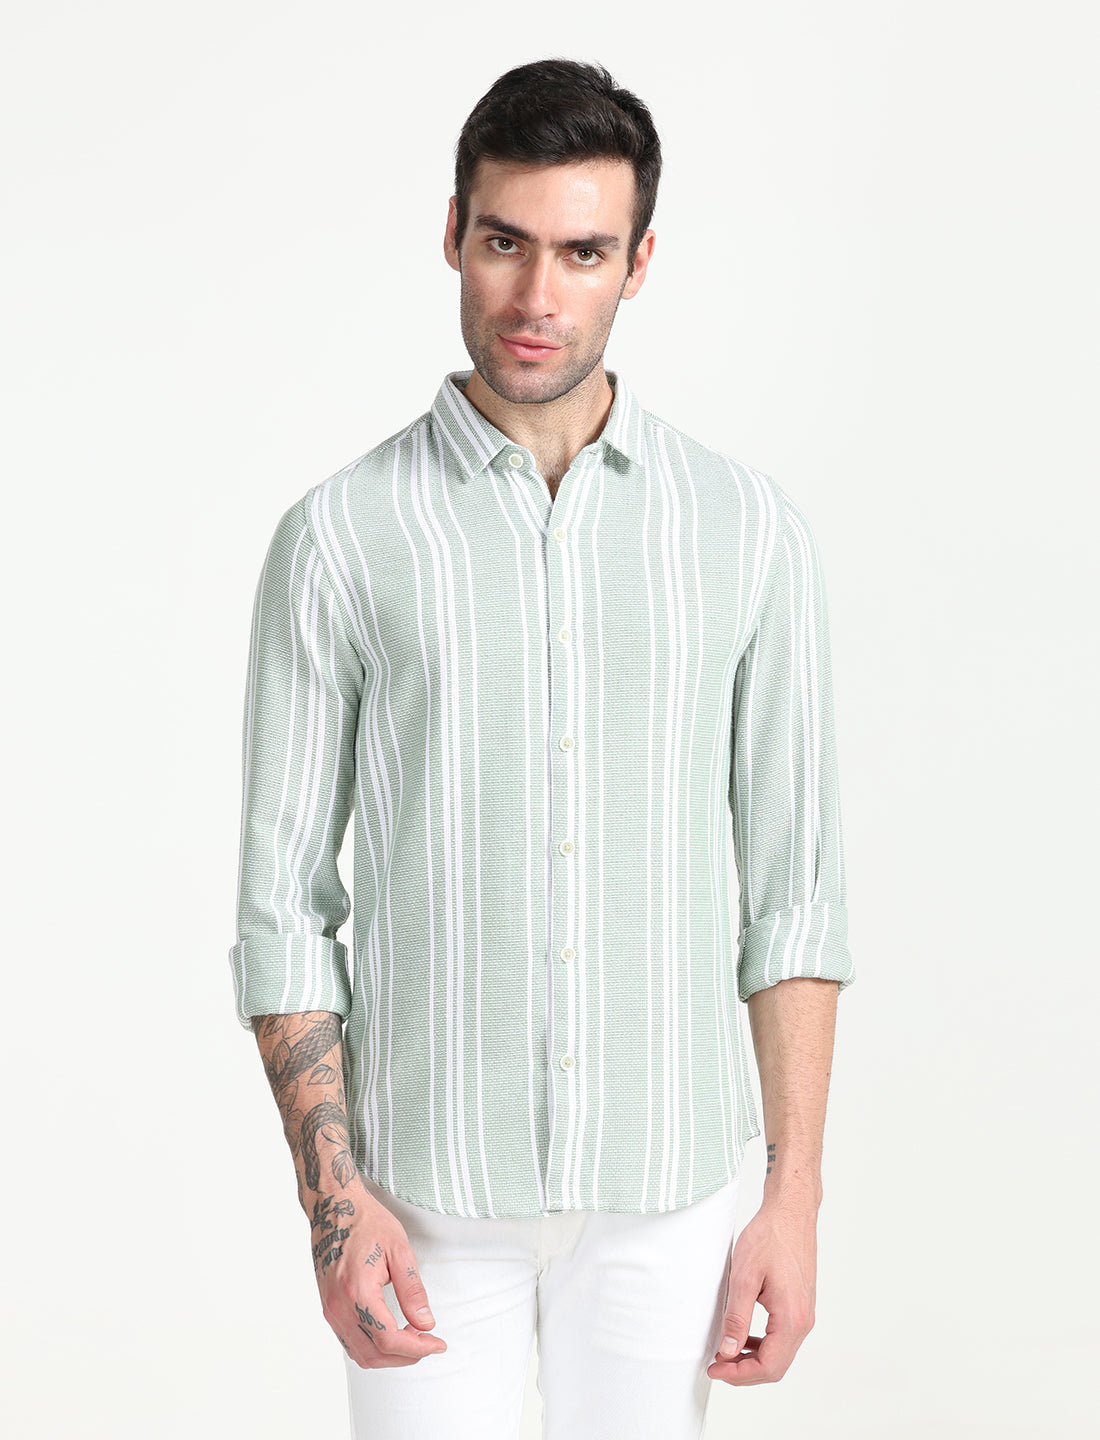 Peppermint Green Dobby Shirt for Men